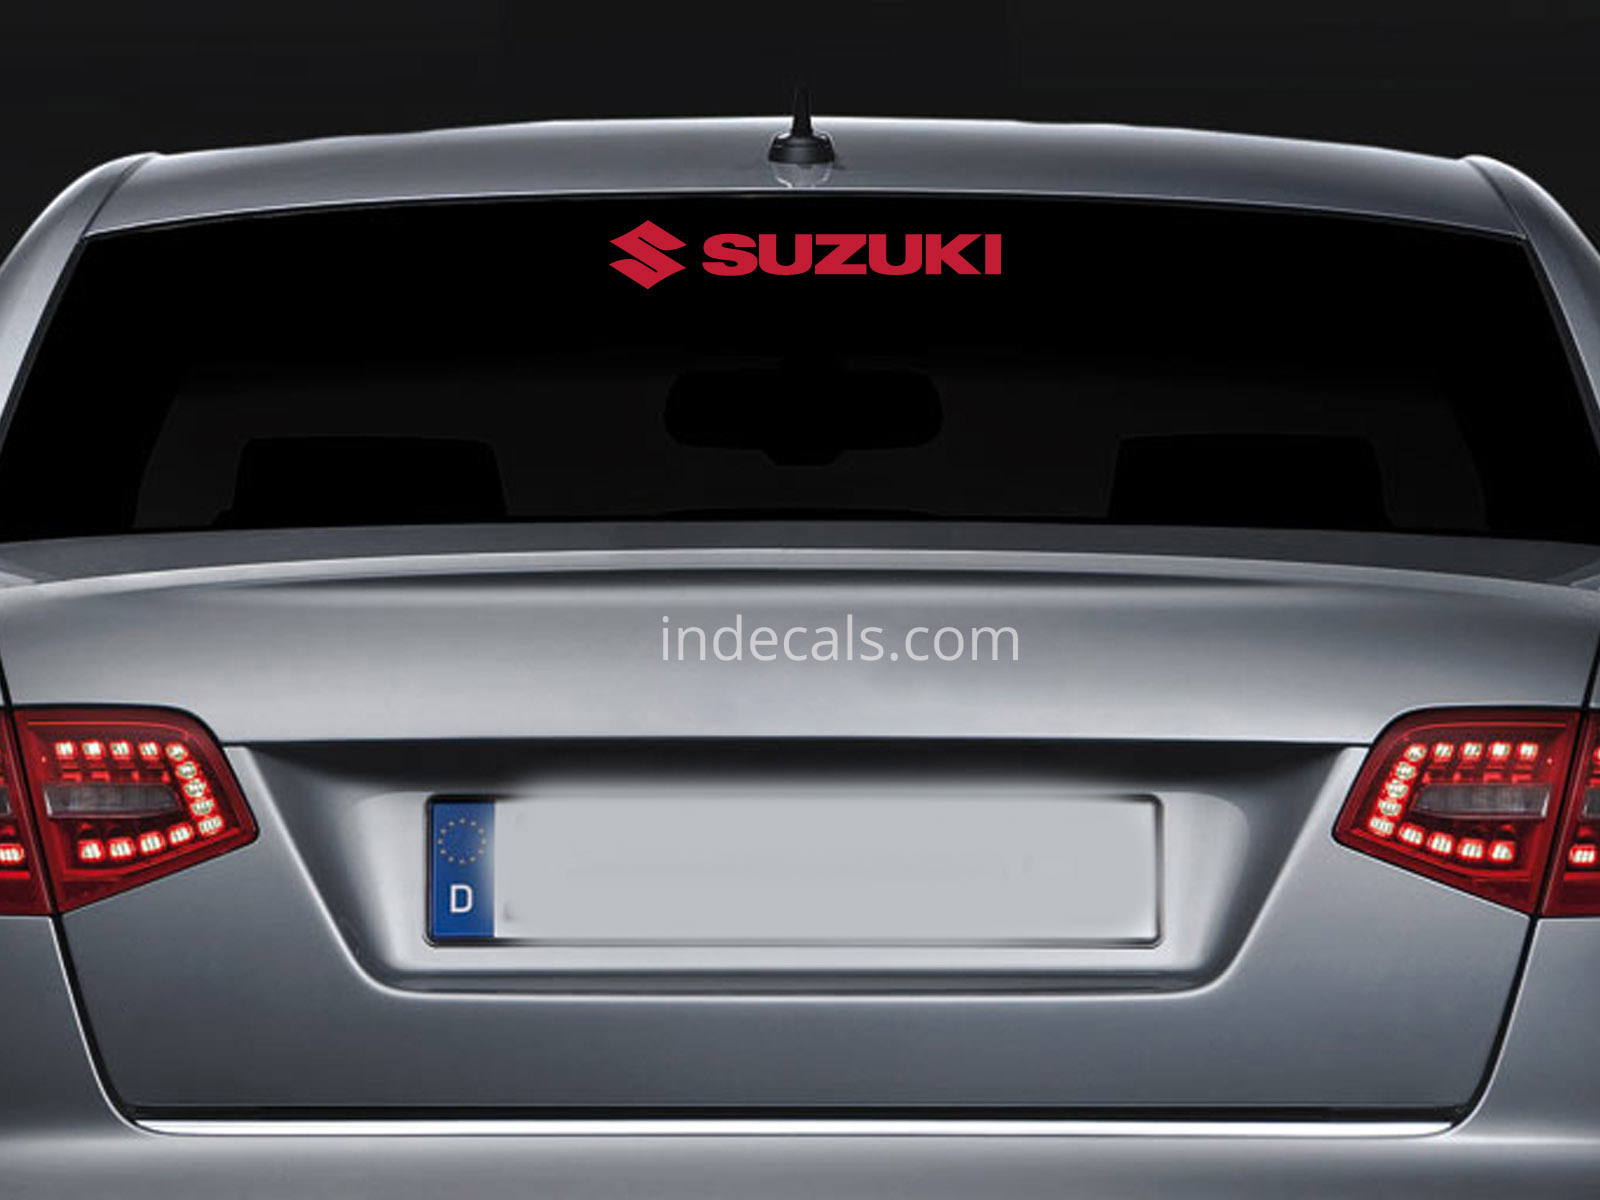 1 x Suzuki Sticker for Windshield or Back Window - Red